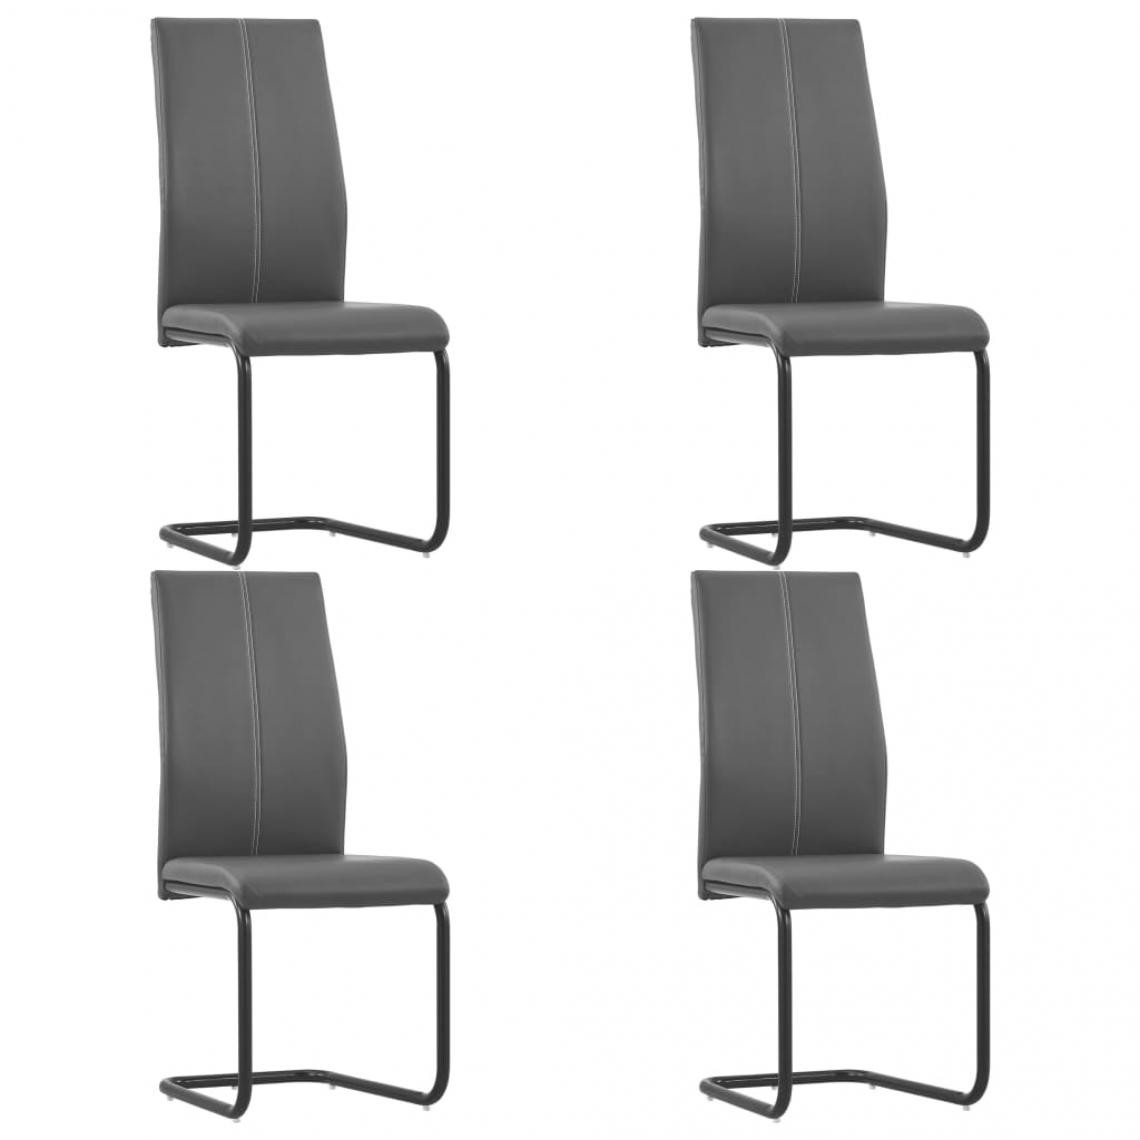 Decoshop26 - Lot de 4 chaises de salle à manger cuisine cantilever design moderne similicuir gris CDS021378 - Chaises